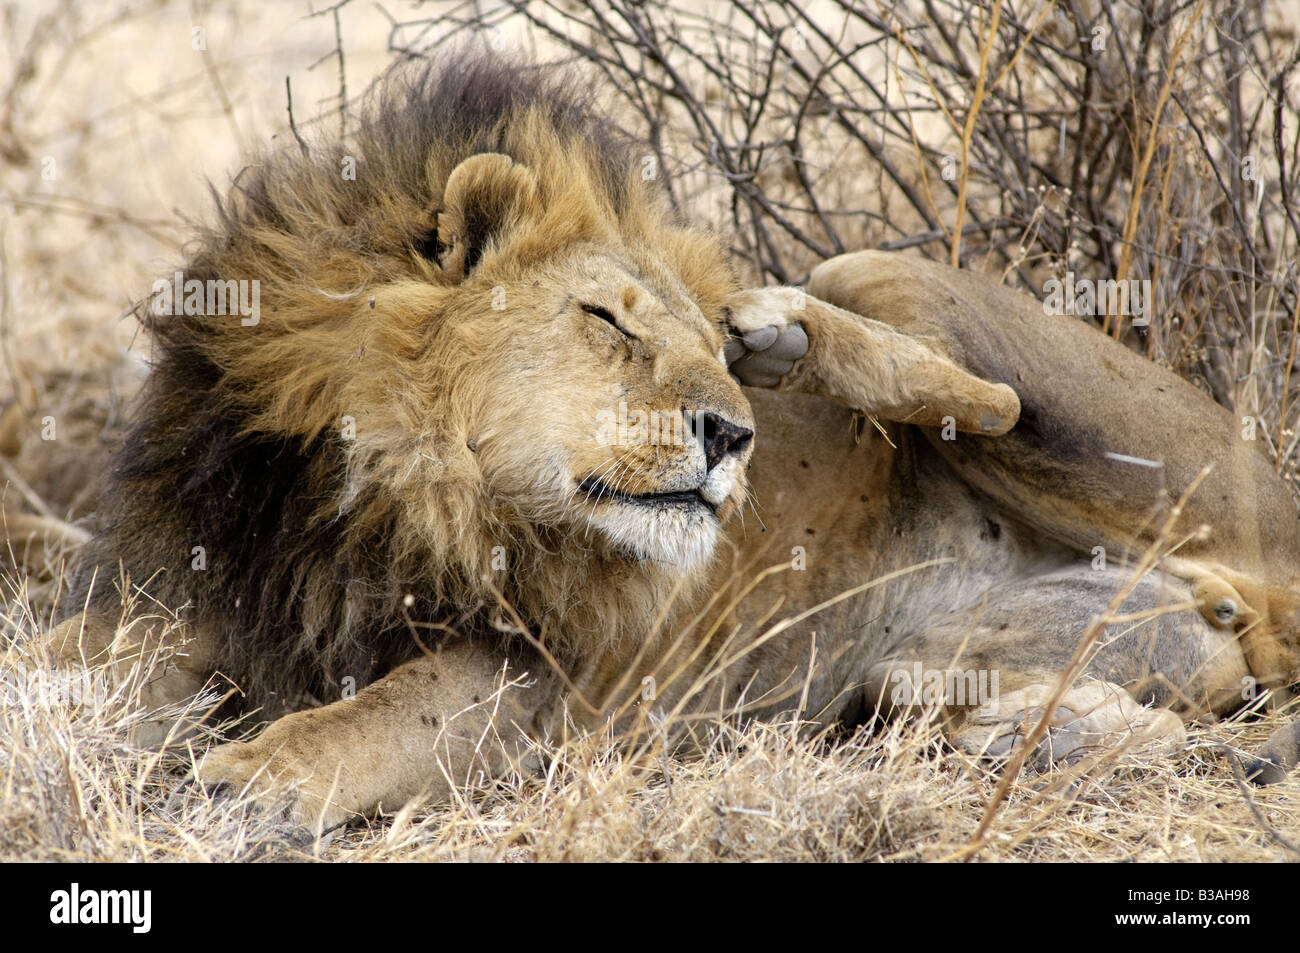 Männlicher Löwe Panthera Leo ruht kratzt sich den Kopf - Löwen verbringen in der Regel 20-21 Stunden am Tag ruhen, Ndutu, Ngorongoro, Tansania Stockfoto